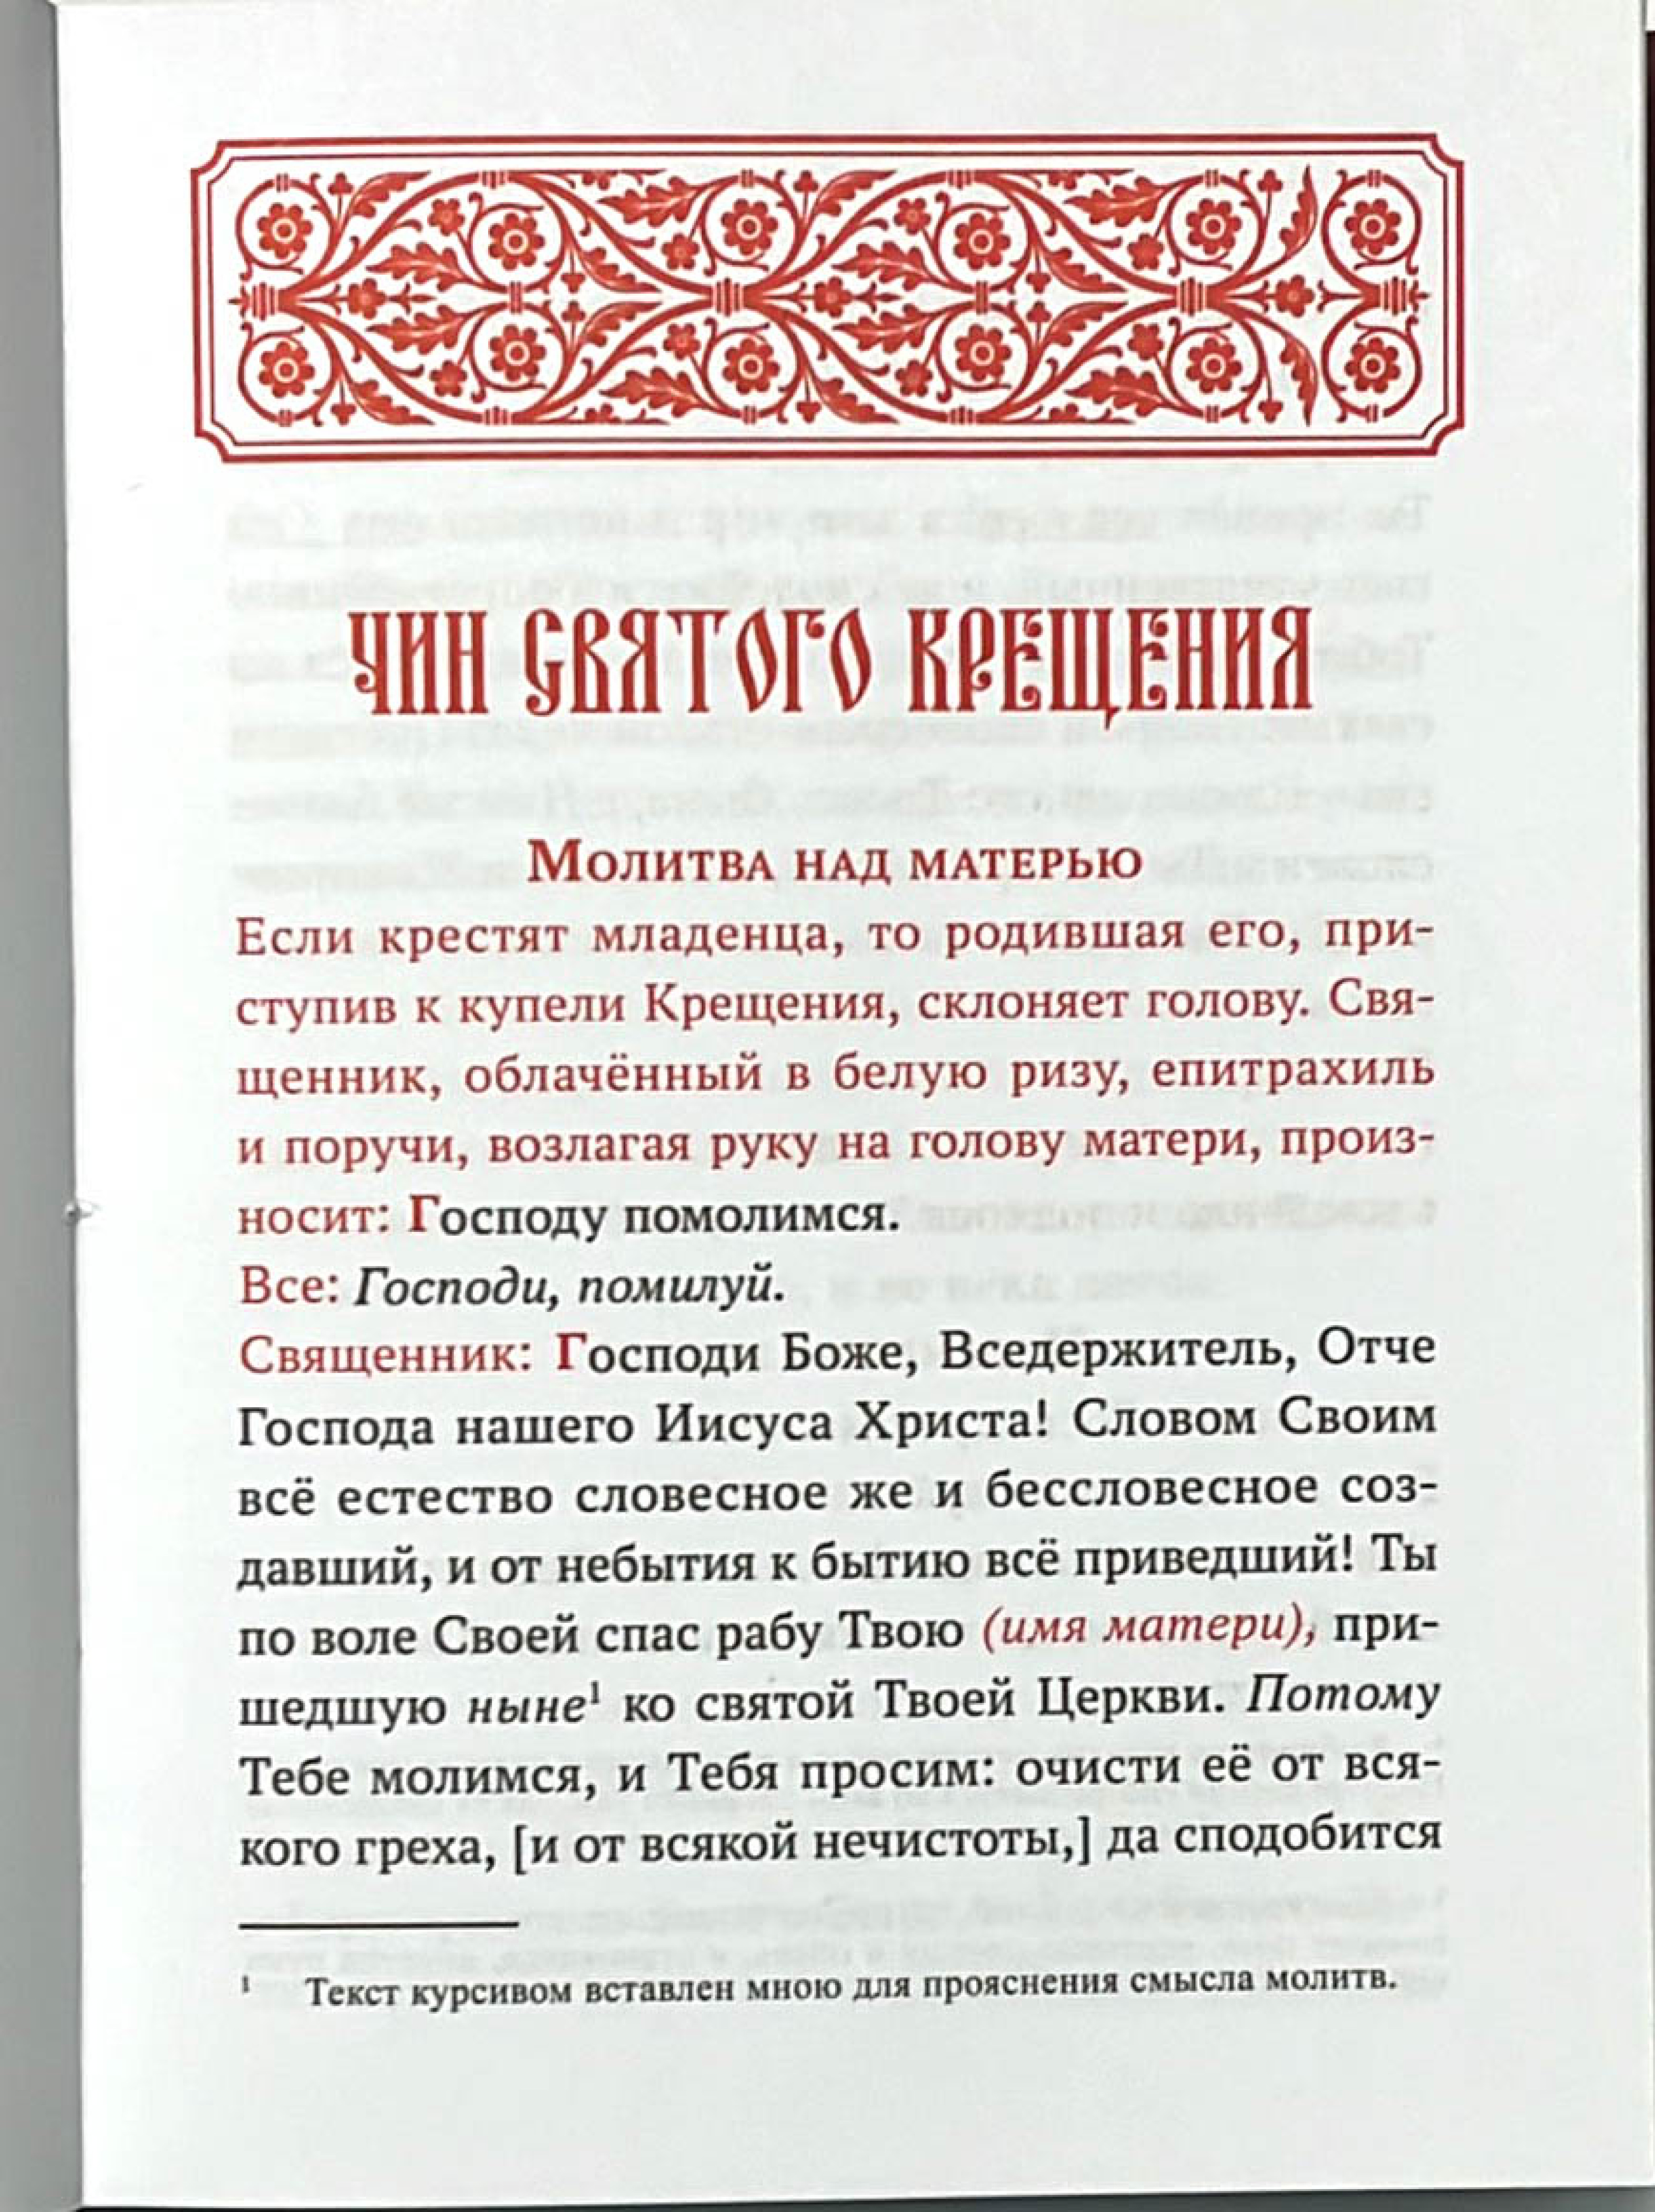 Требник на русском языке. Опыт литургической реконструкции